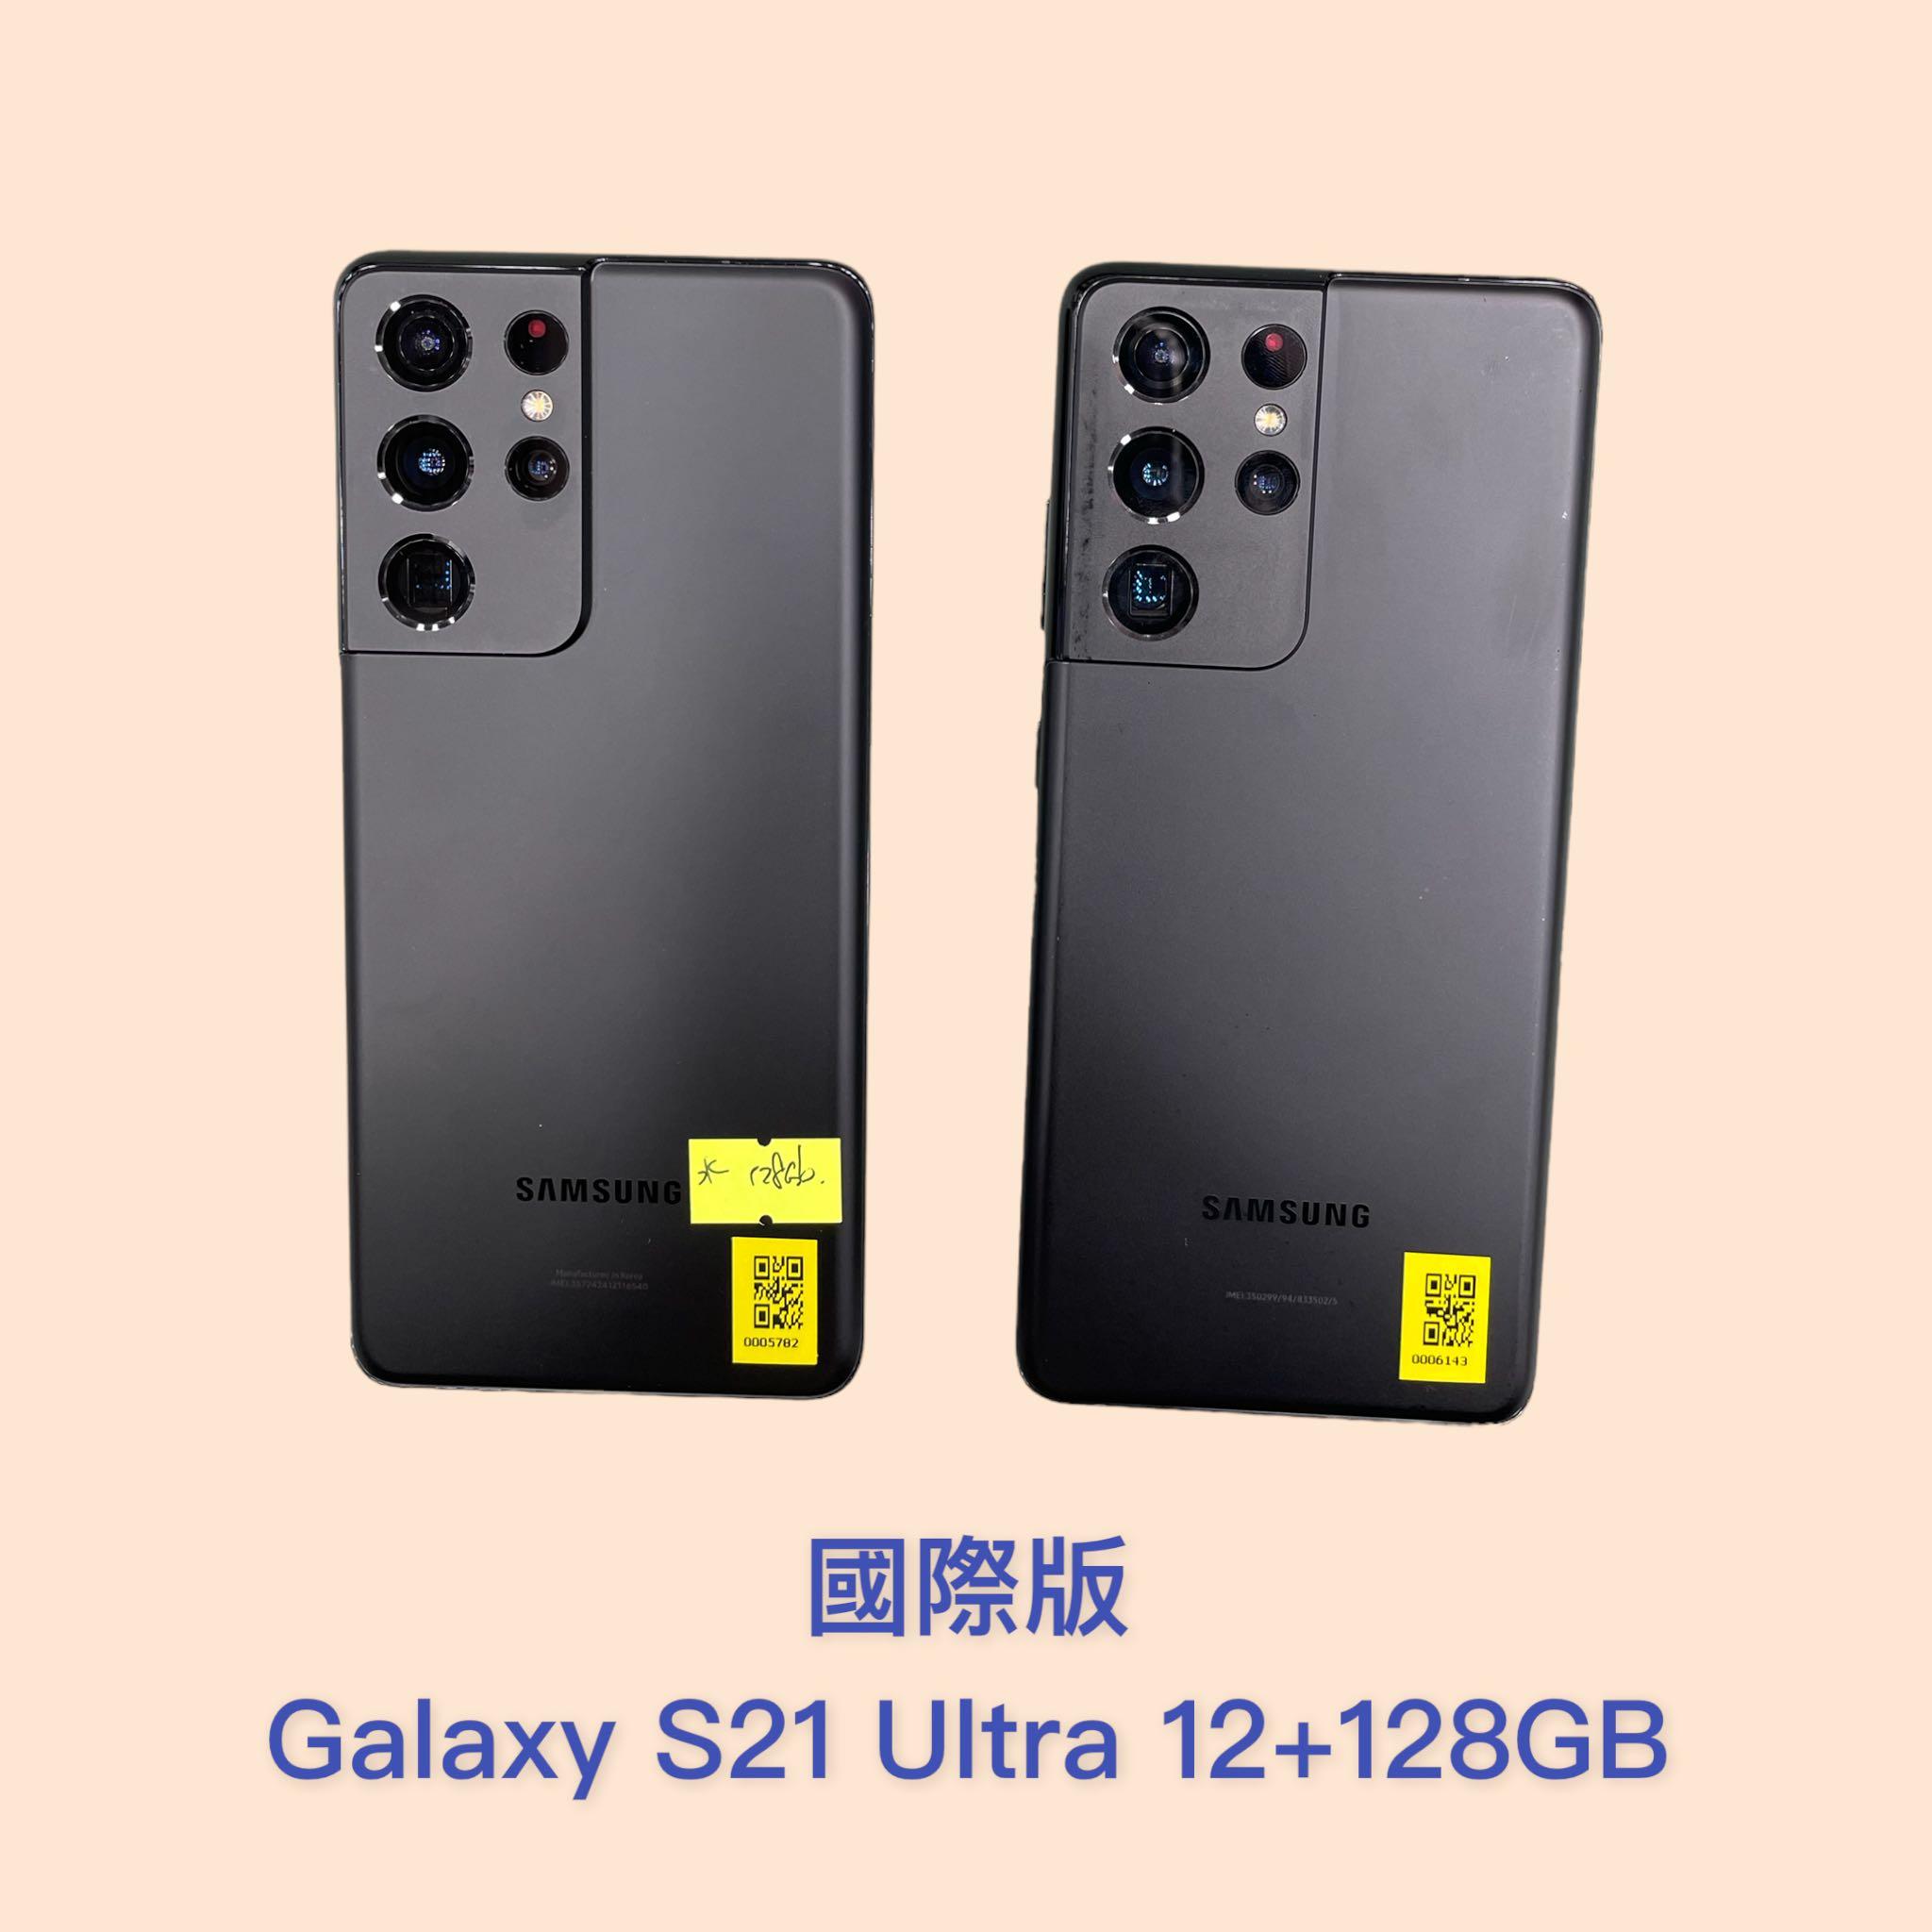 國際版Galaxy S21 Ultra 12+128GB, 手提電話, 手機, Android 安卓手機 